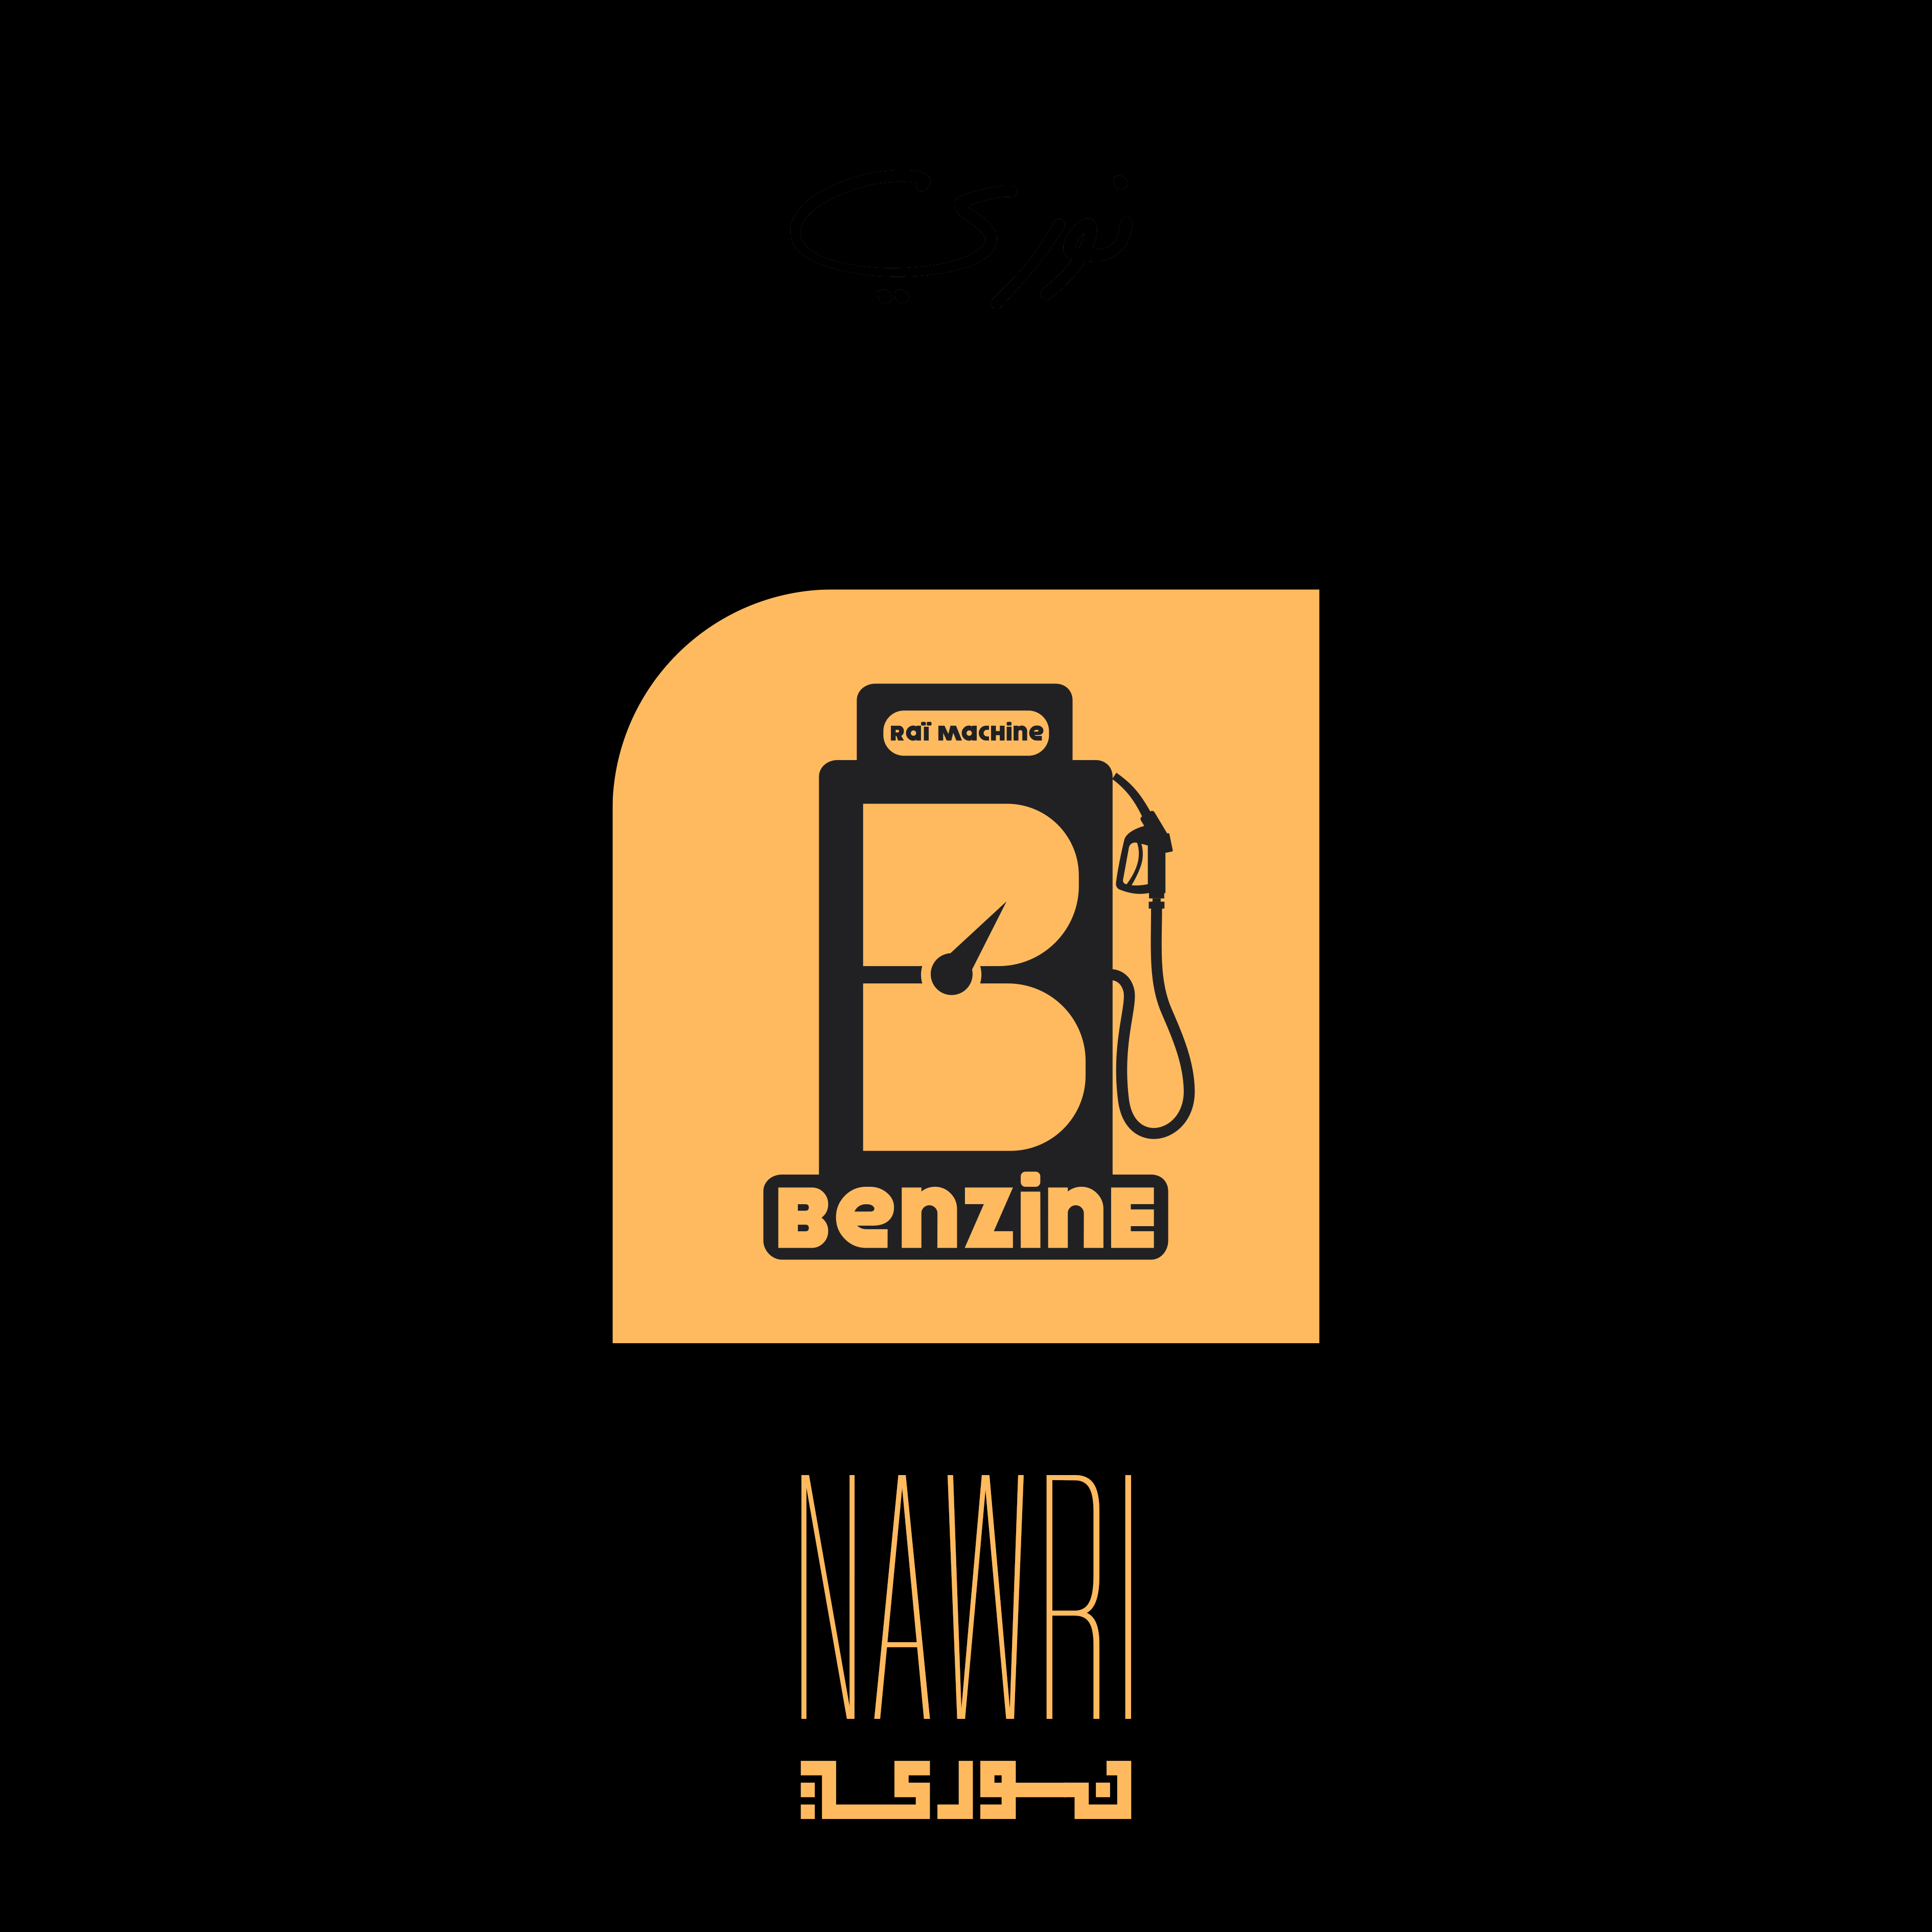 Album "Nawri", sorti le 21 mars 2023, disponible sur toutes les plateformes !